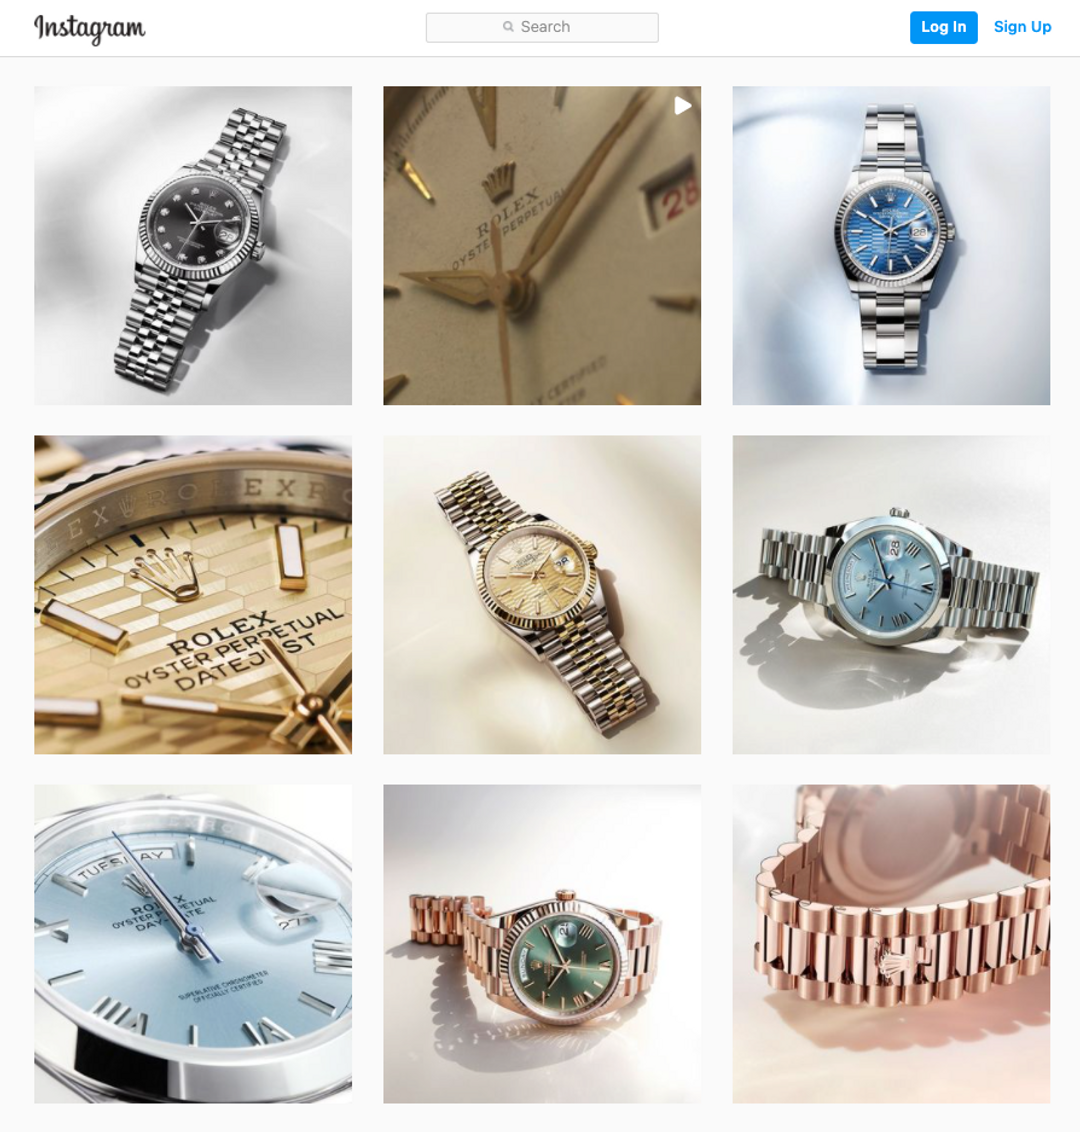 Rolex Instagram Page